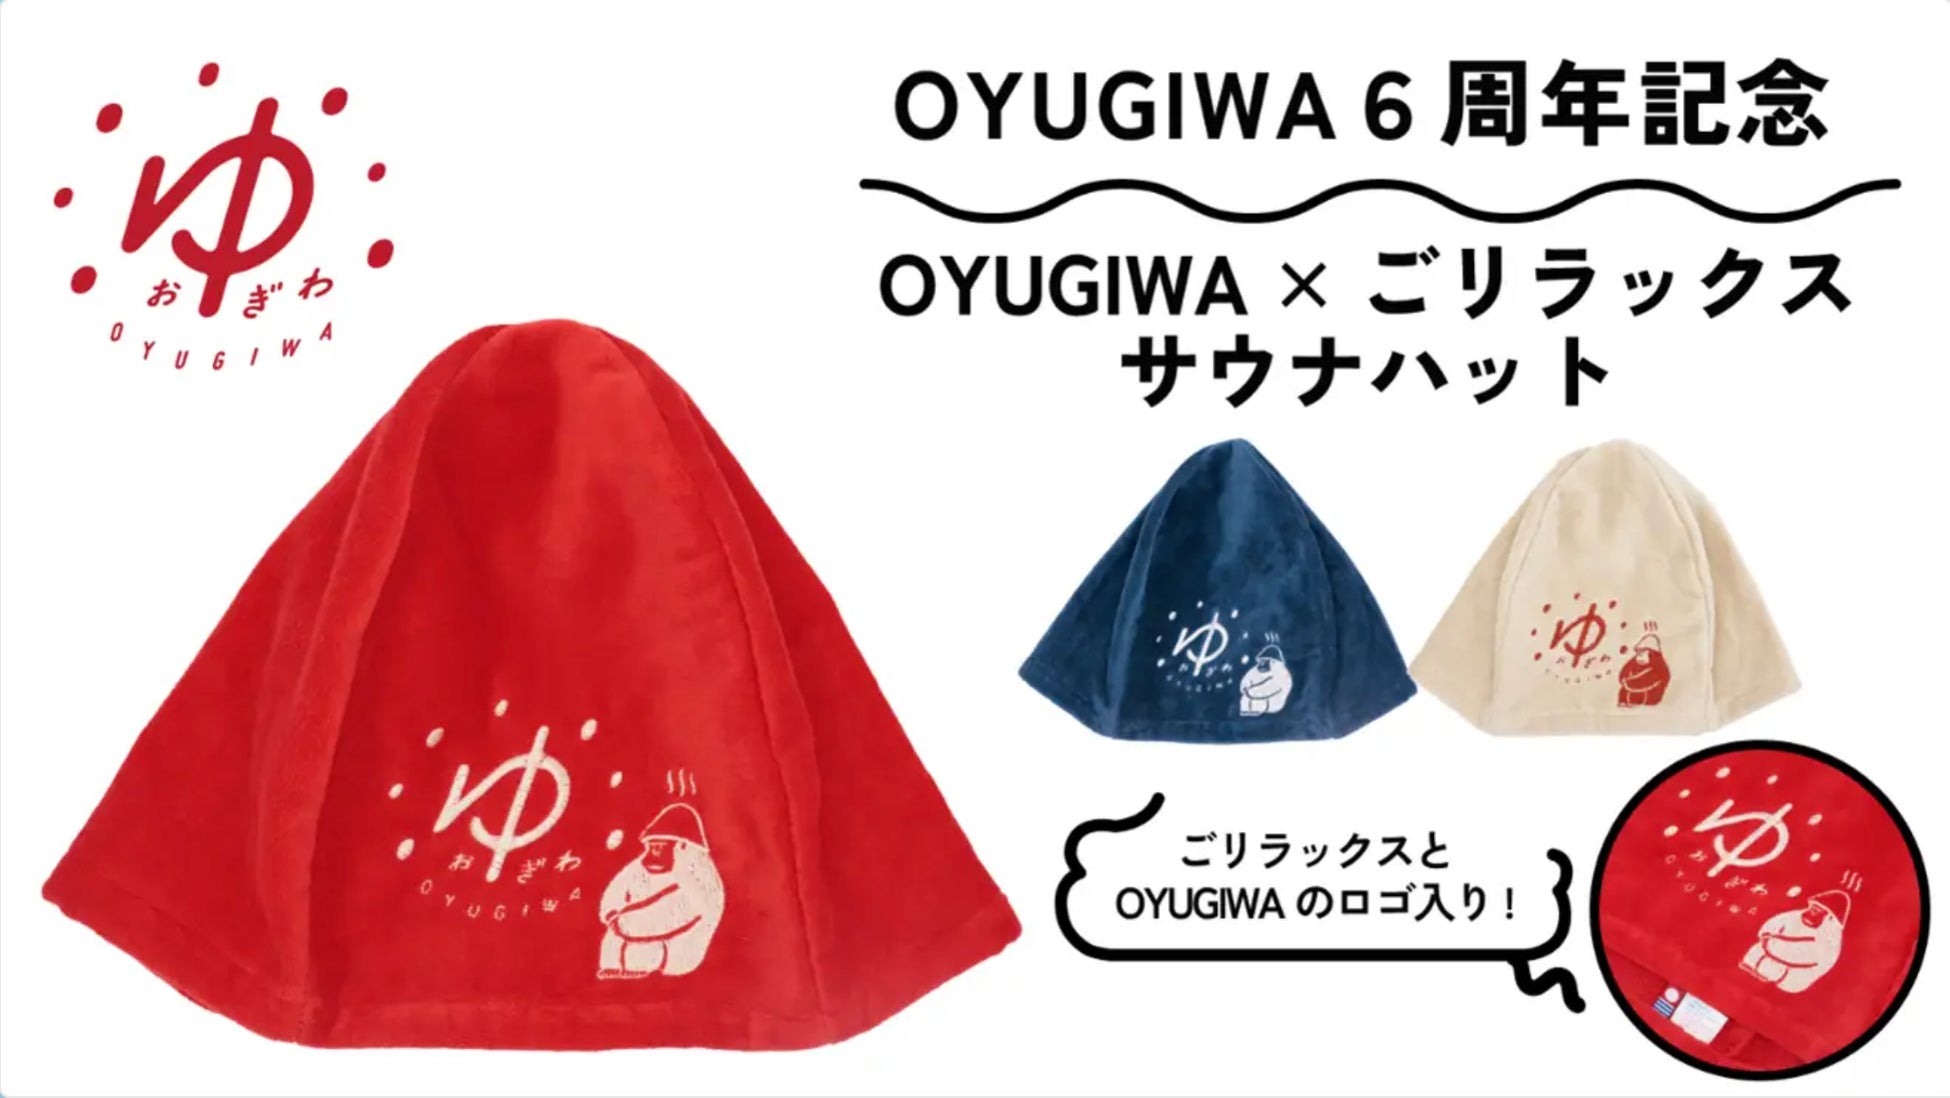 『“えがお”でぽかぽかに』がコンセプトの「OYUGIWA」と癒しのゴリラが人気のととのい系サウナブランド「ごリラックス」のコラボ限定グッズが新発売！